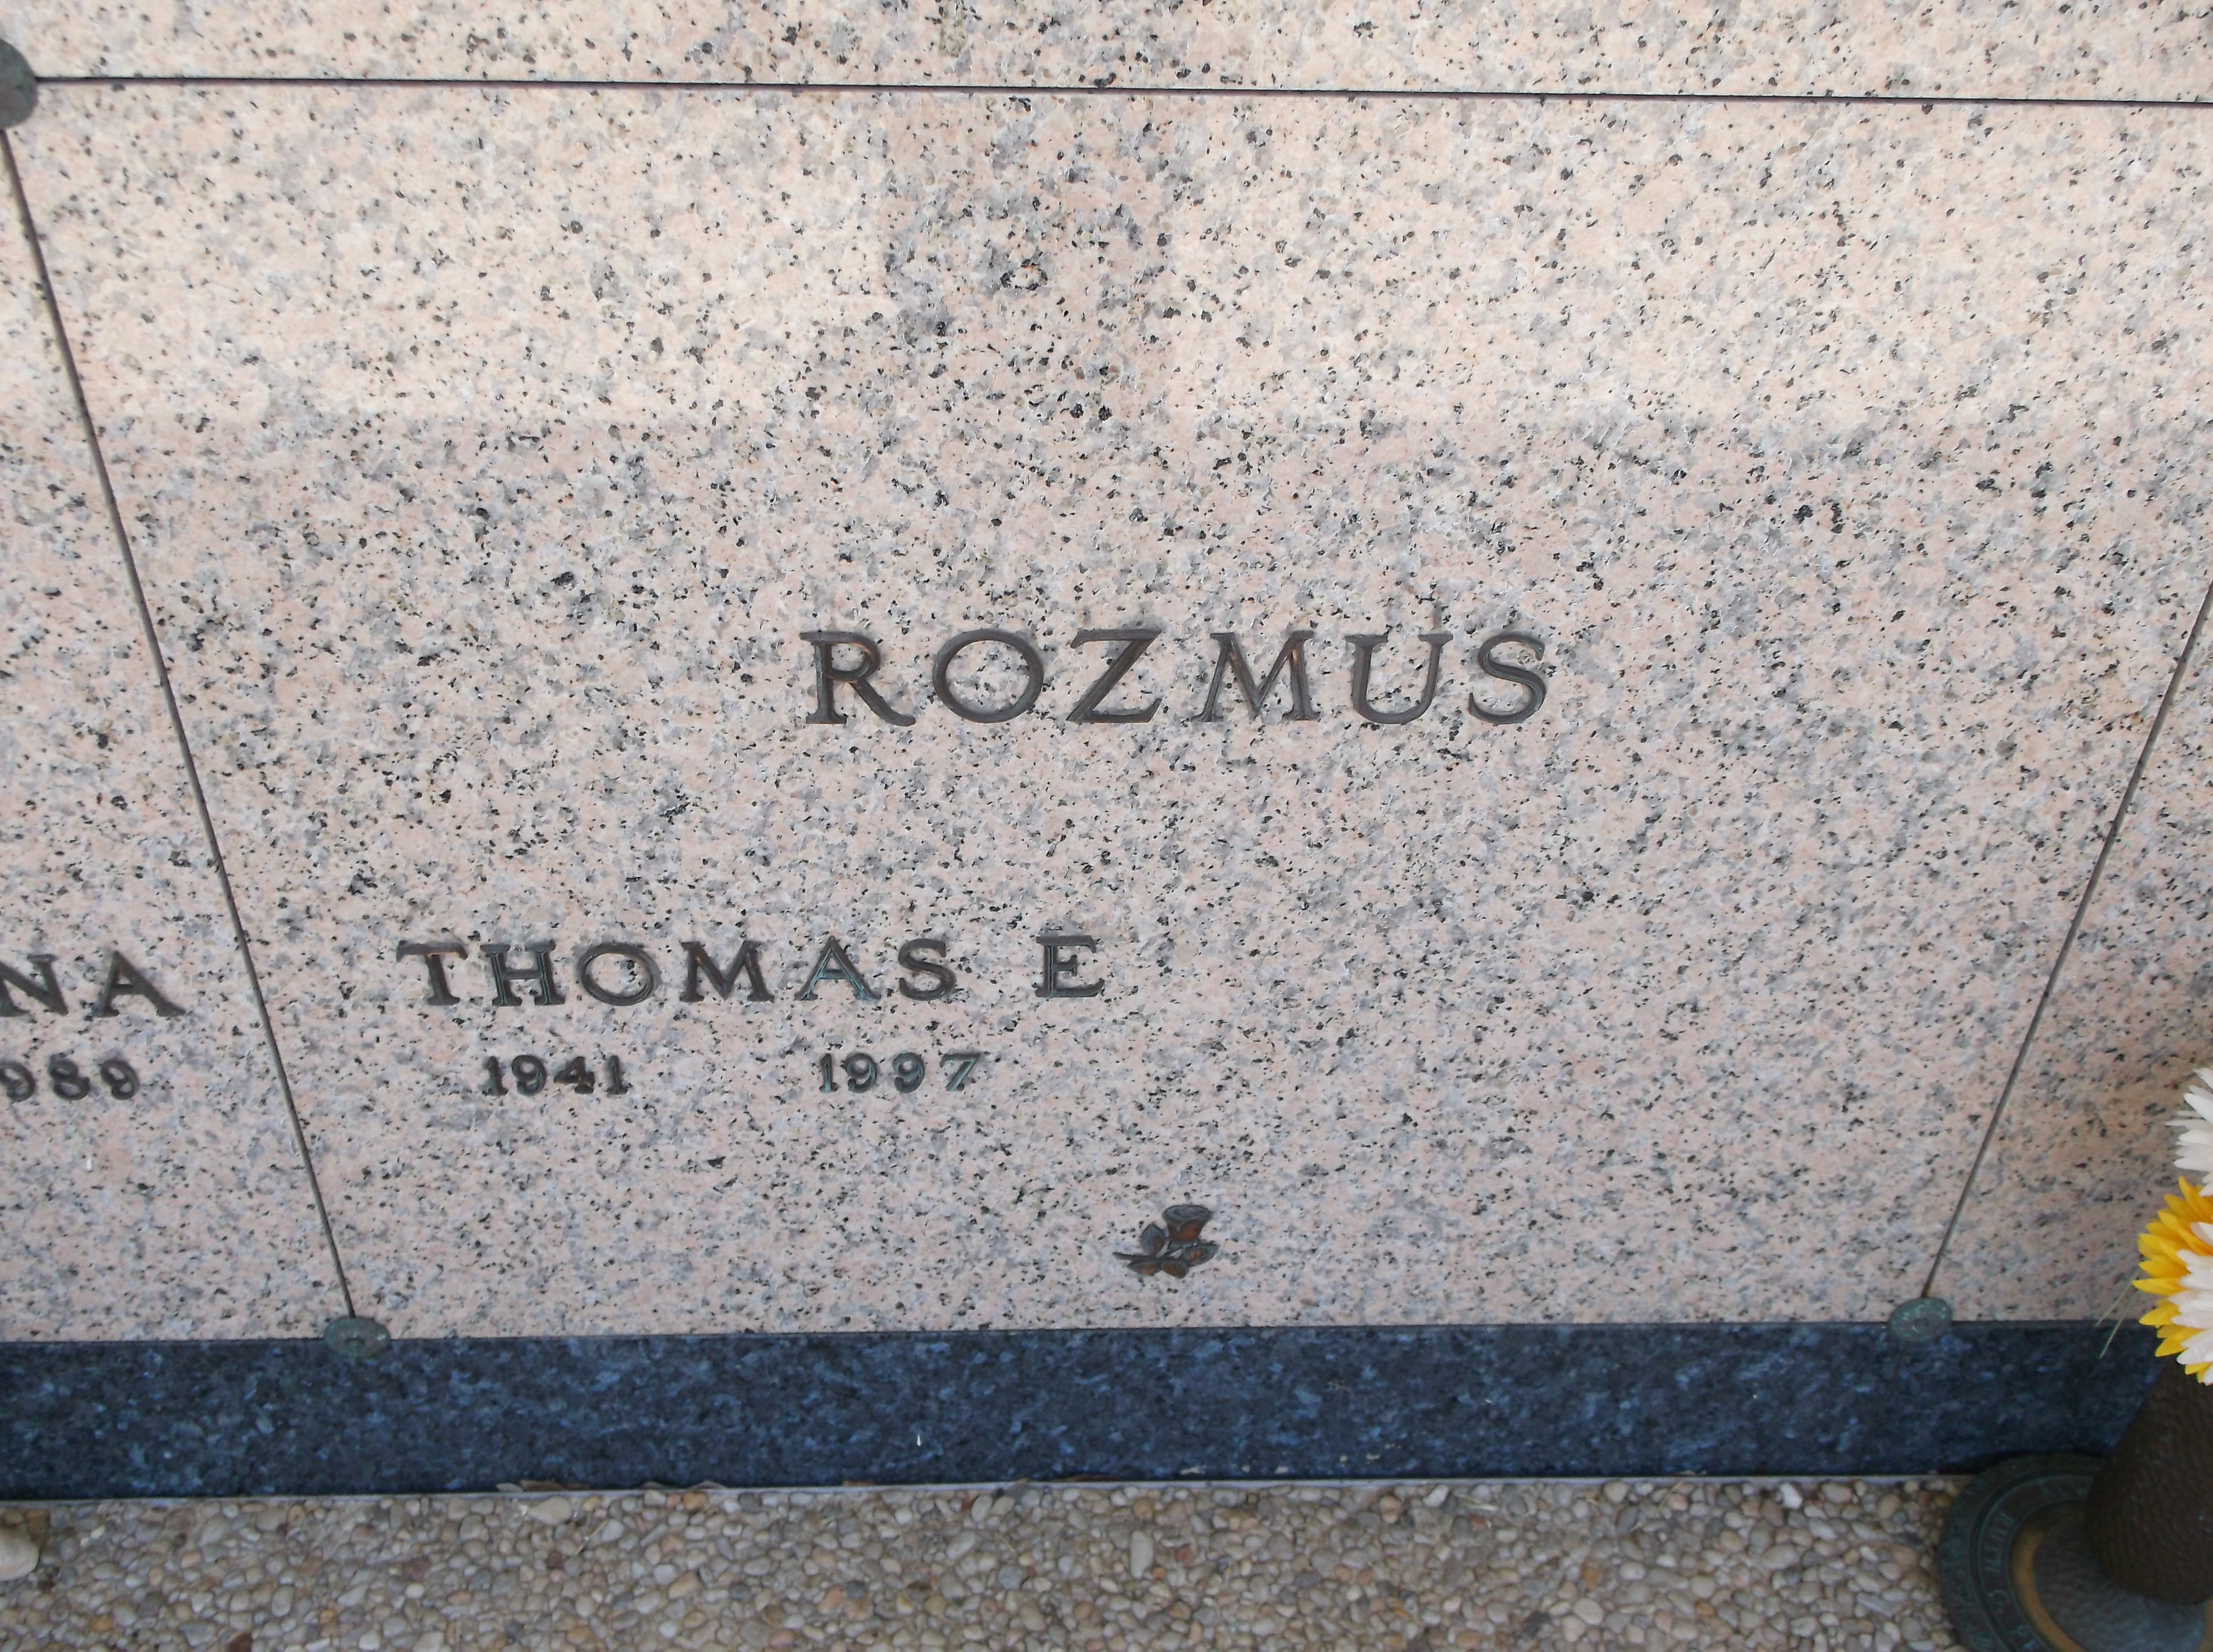 Thomas E Rozmus